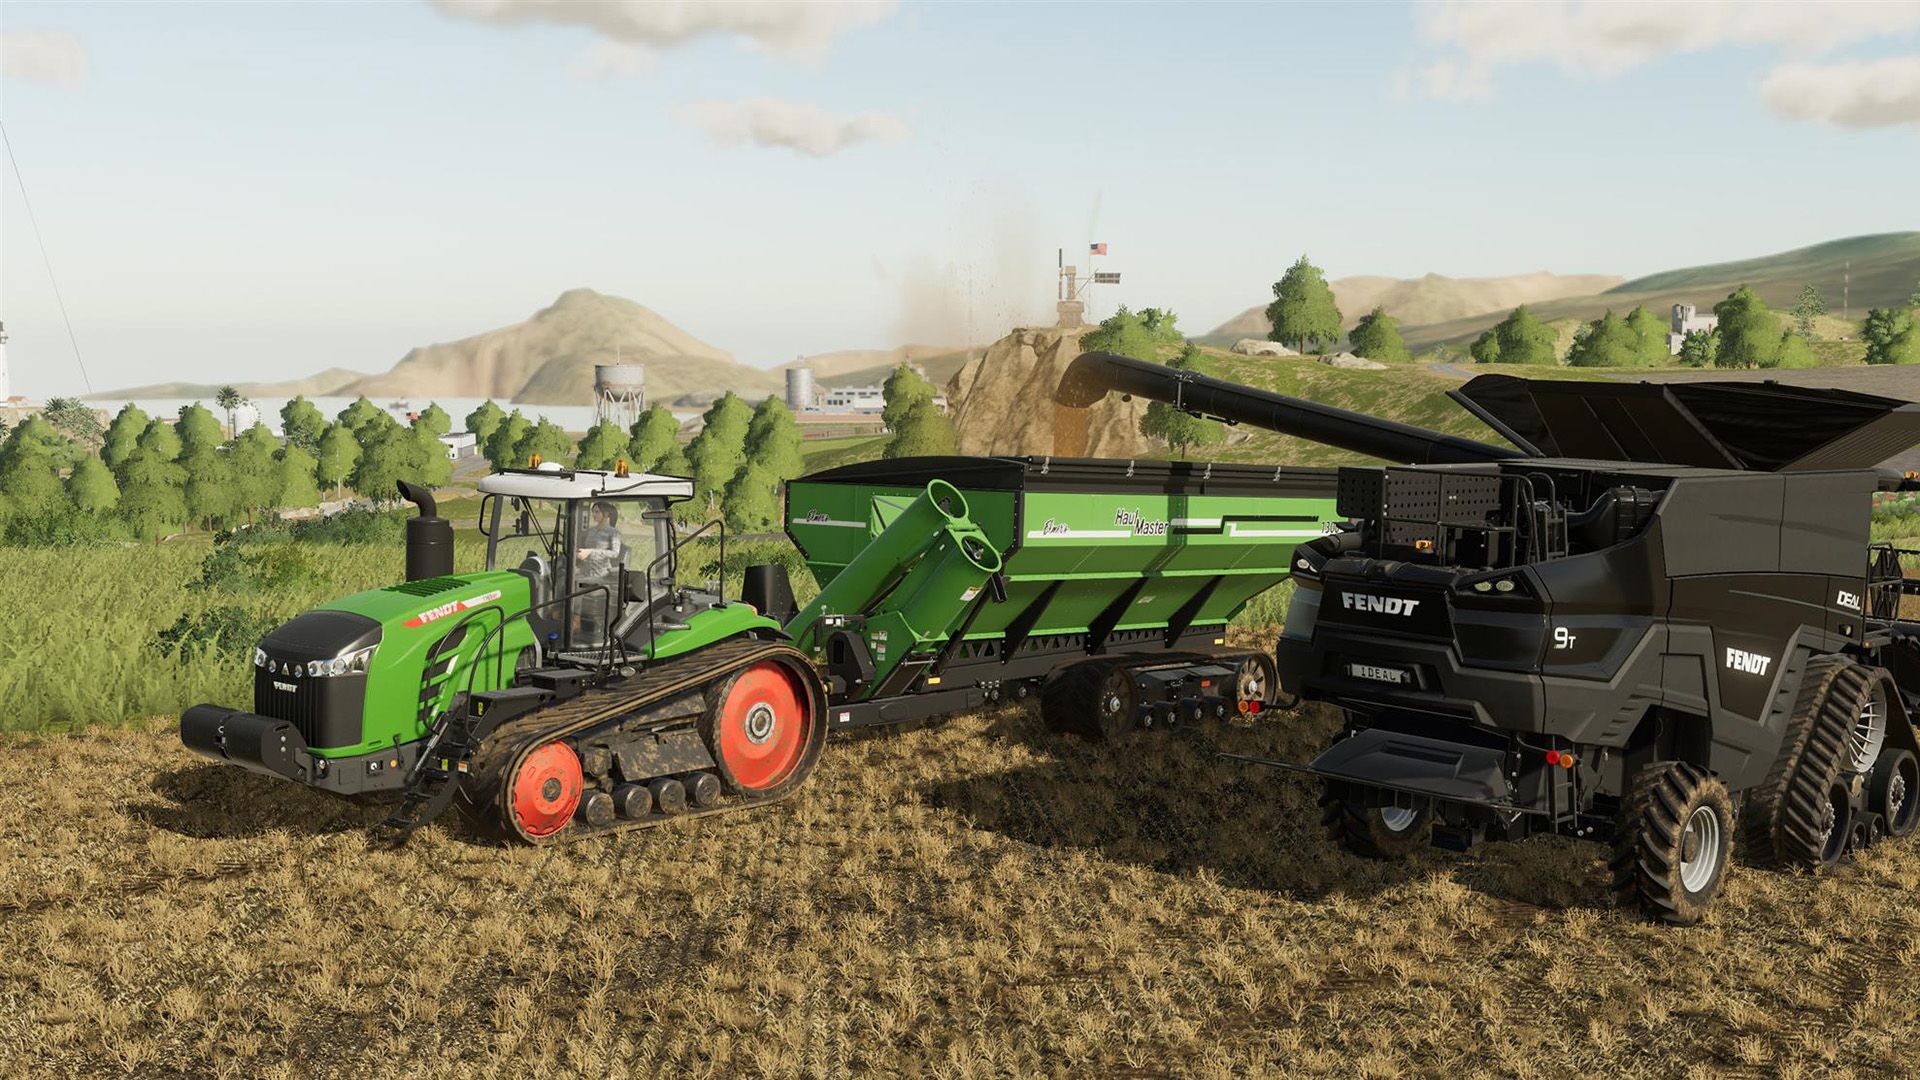 Farming Simulator tractor and truck in corn field